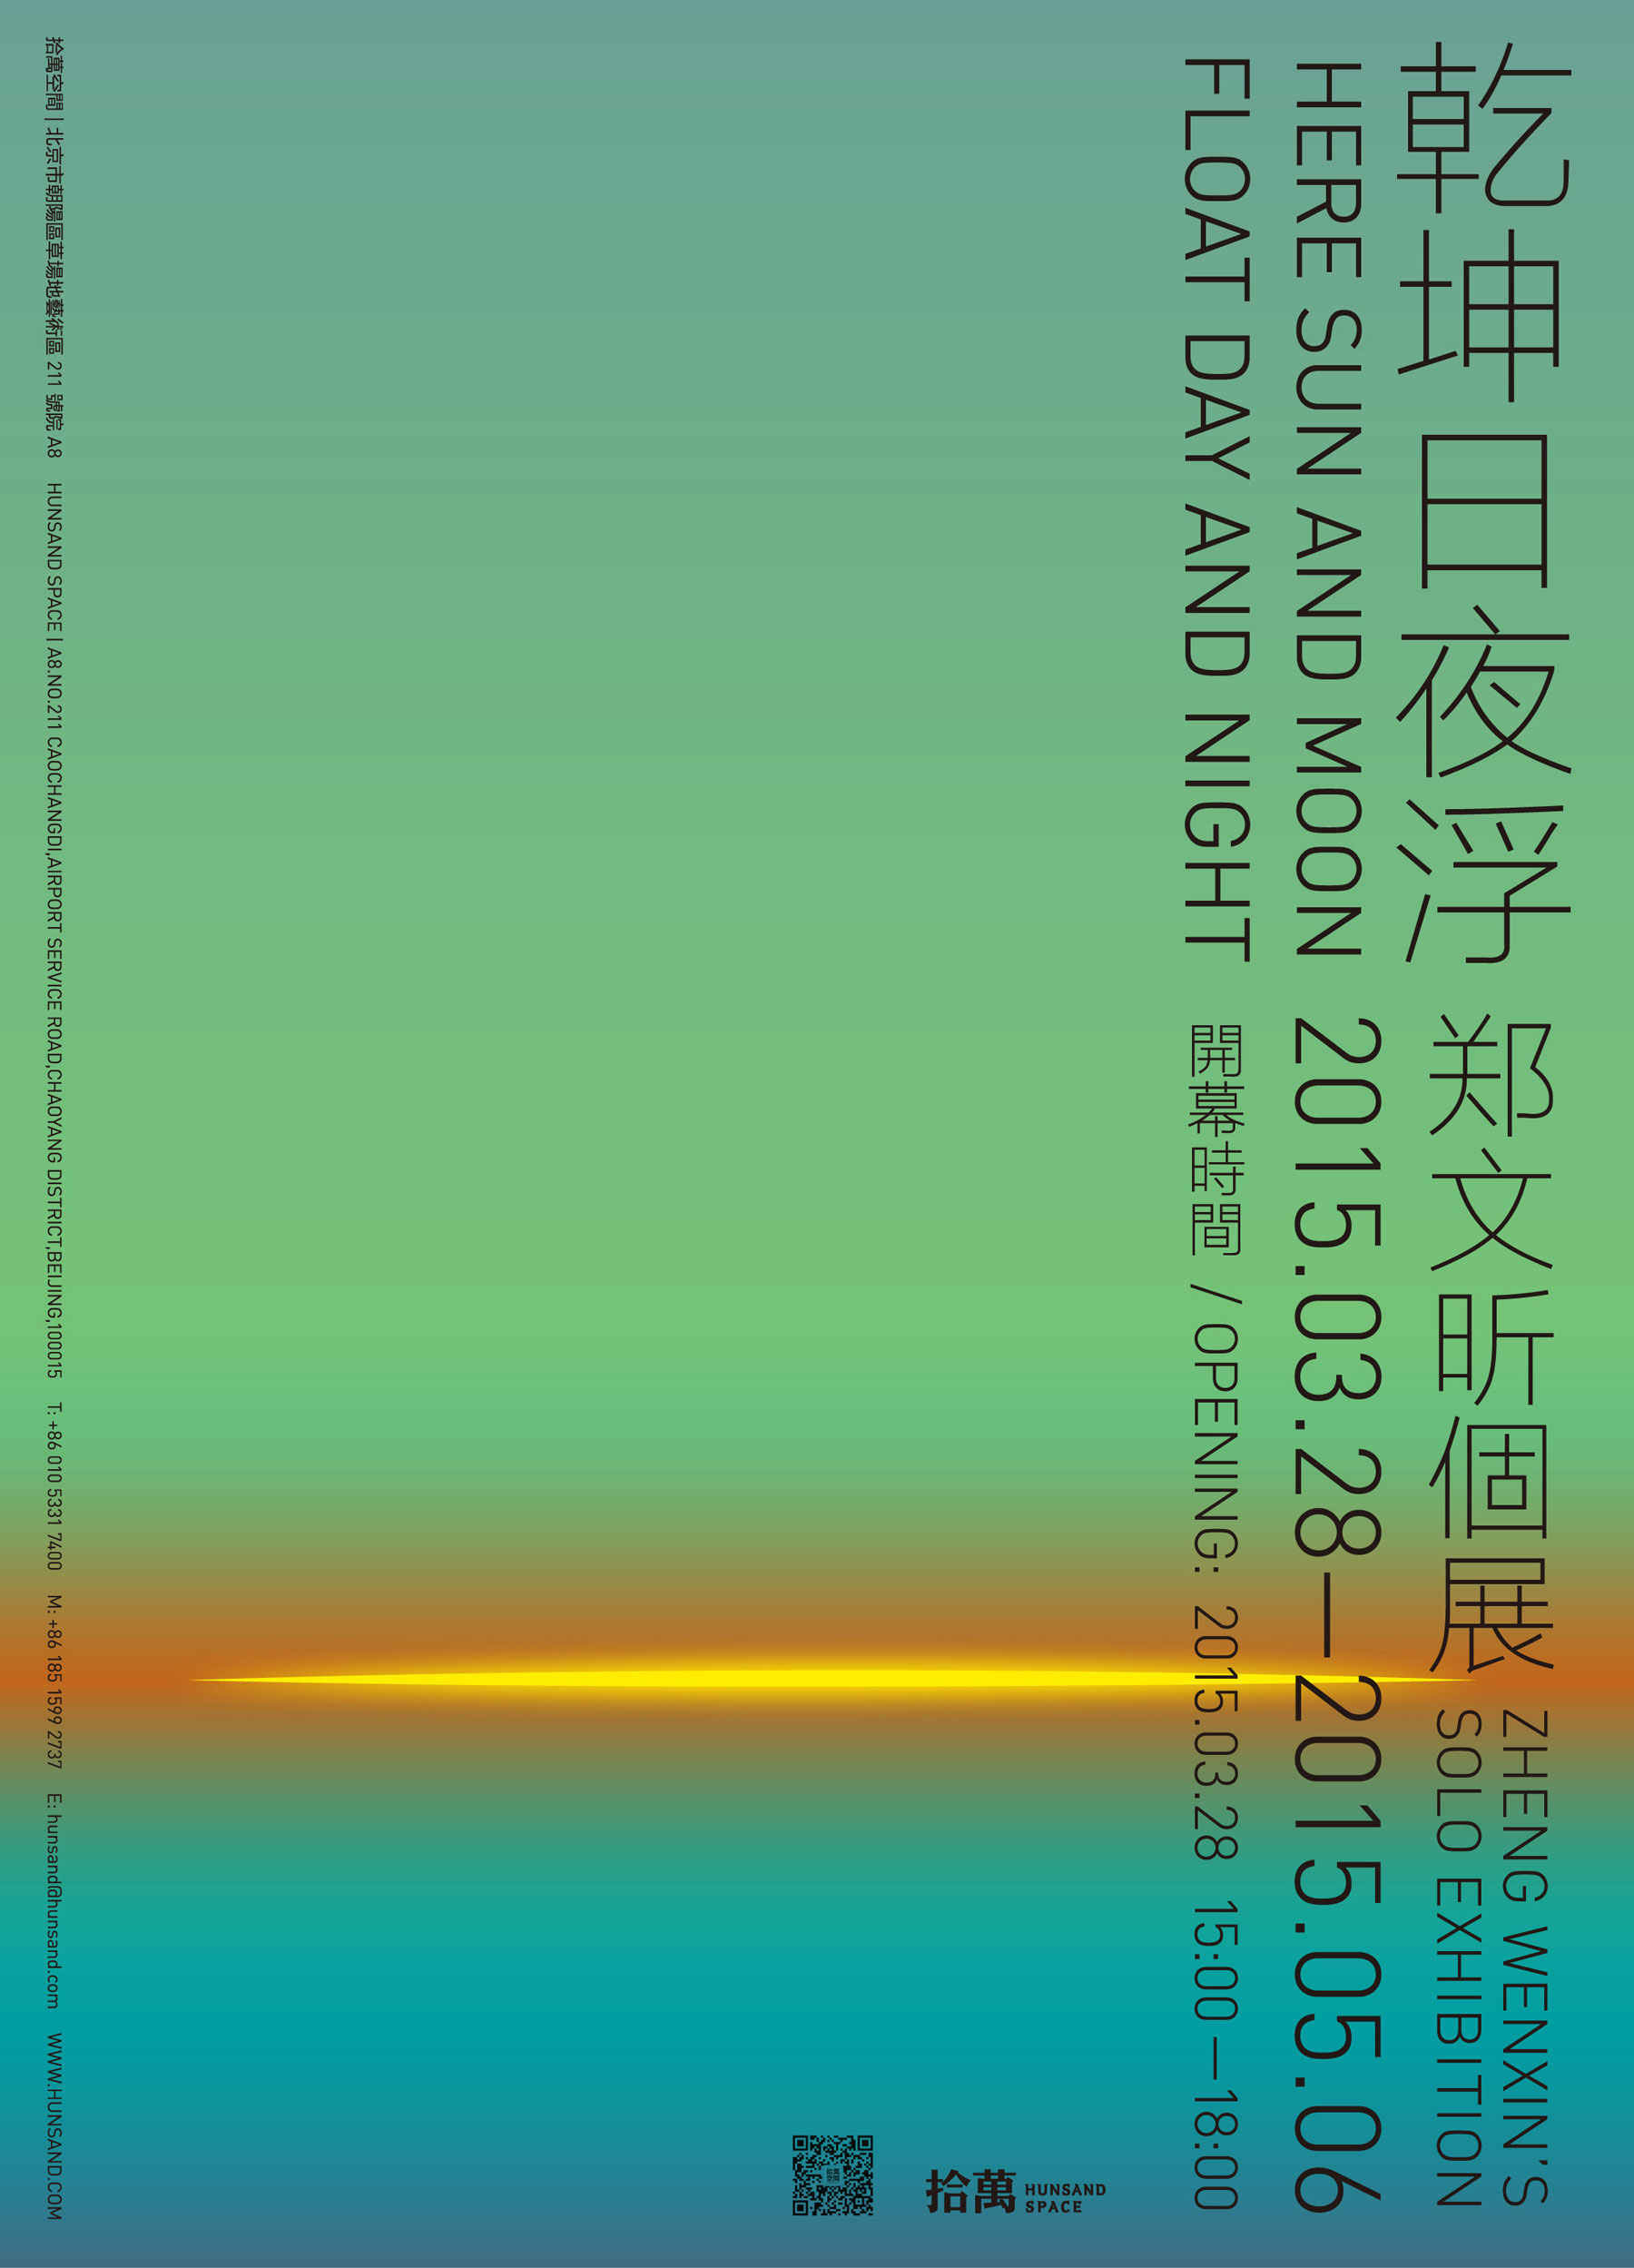 乾坤日夜浮-poster-web-01.jpg